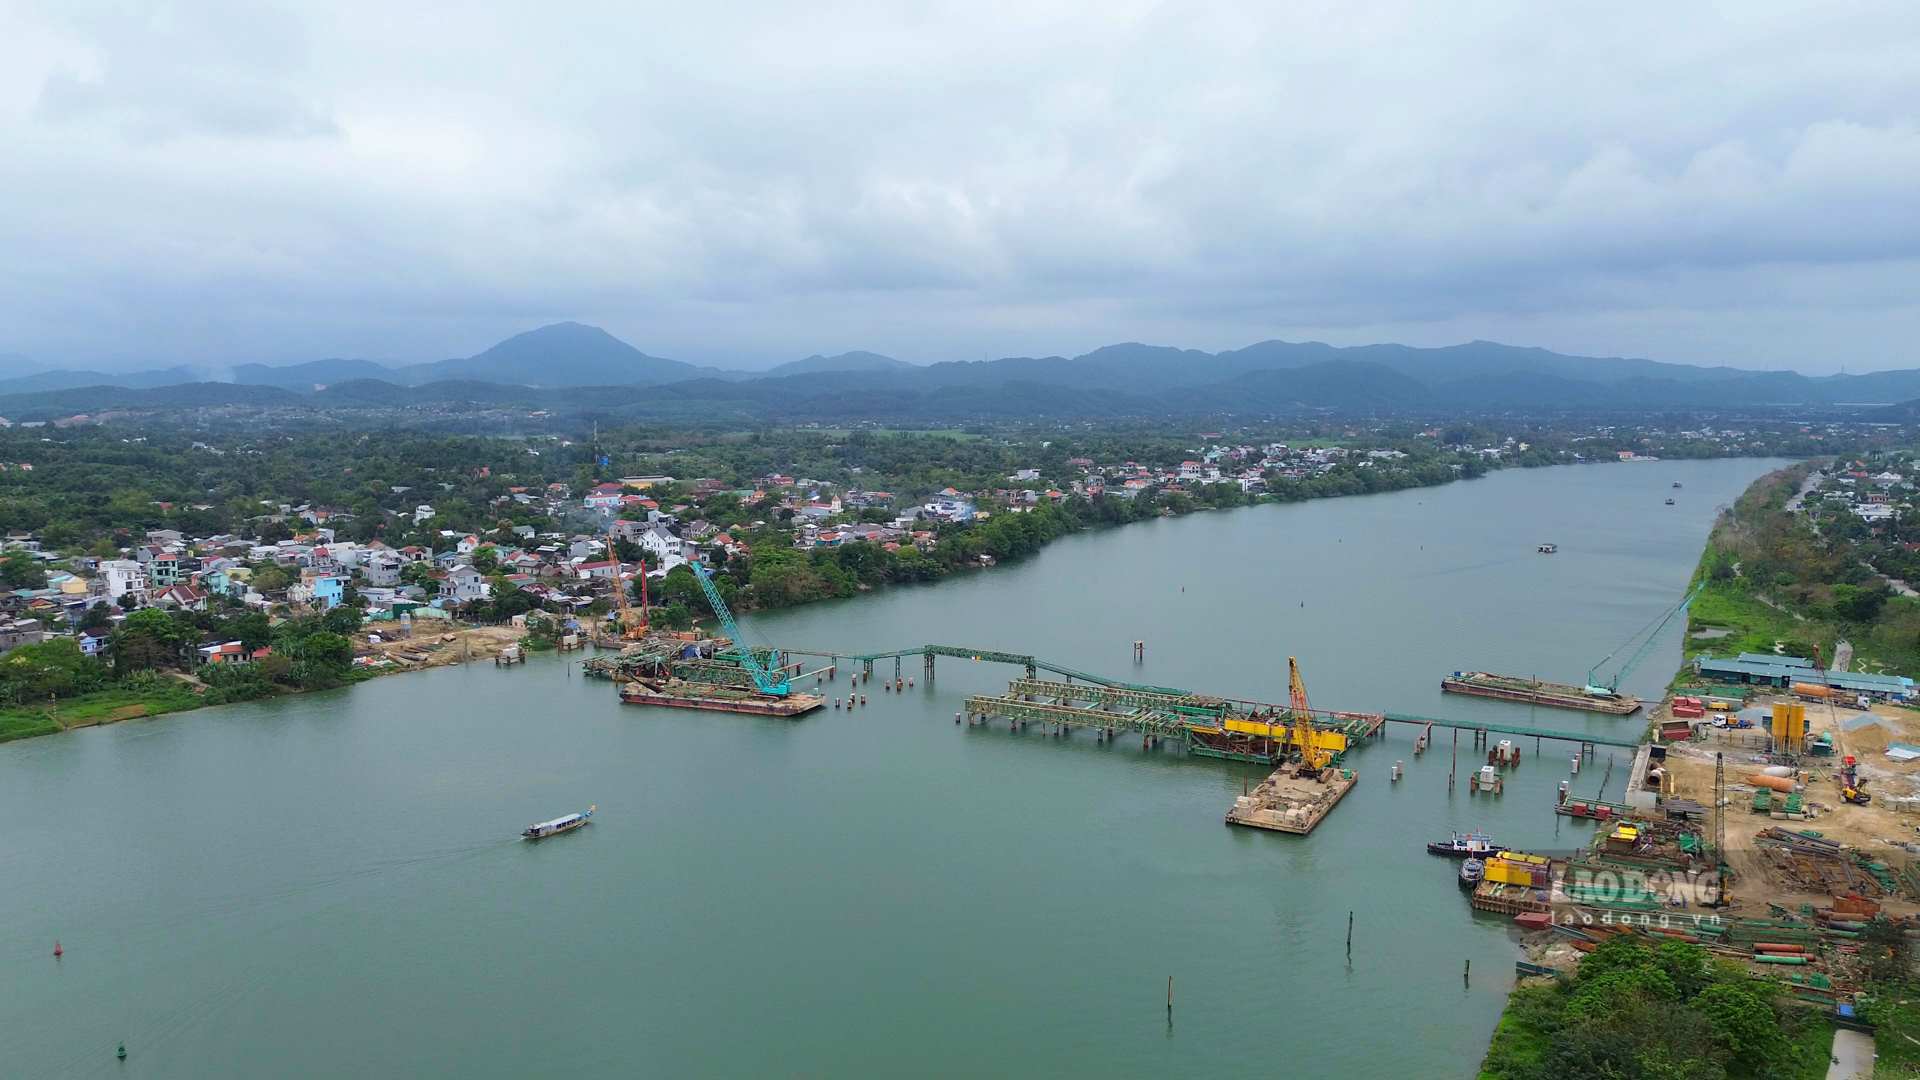 Khởi công vào tháng 12.2022, cầu vượt Nguyễn Hoàng thuộc Dự án cầu vượt bắc qua sông Hương và đường Nguyễn Hoàng mở rộng có tổng vốn đầu tư hơn 2.280 tỉ đồng. Trong đó, giai đoạn một hơn 1.855 tỉ đồng từ nguồn vốn ngân sách Trung ương và địa phương, thời gian thực hiện 4 năm.